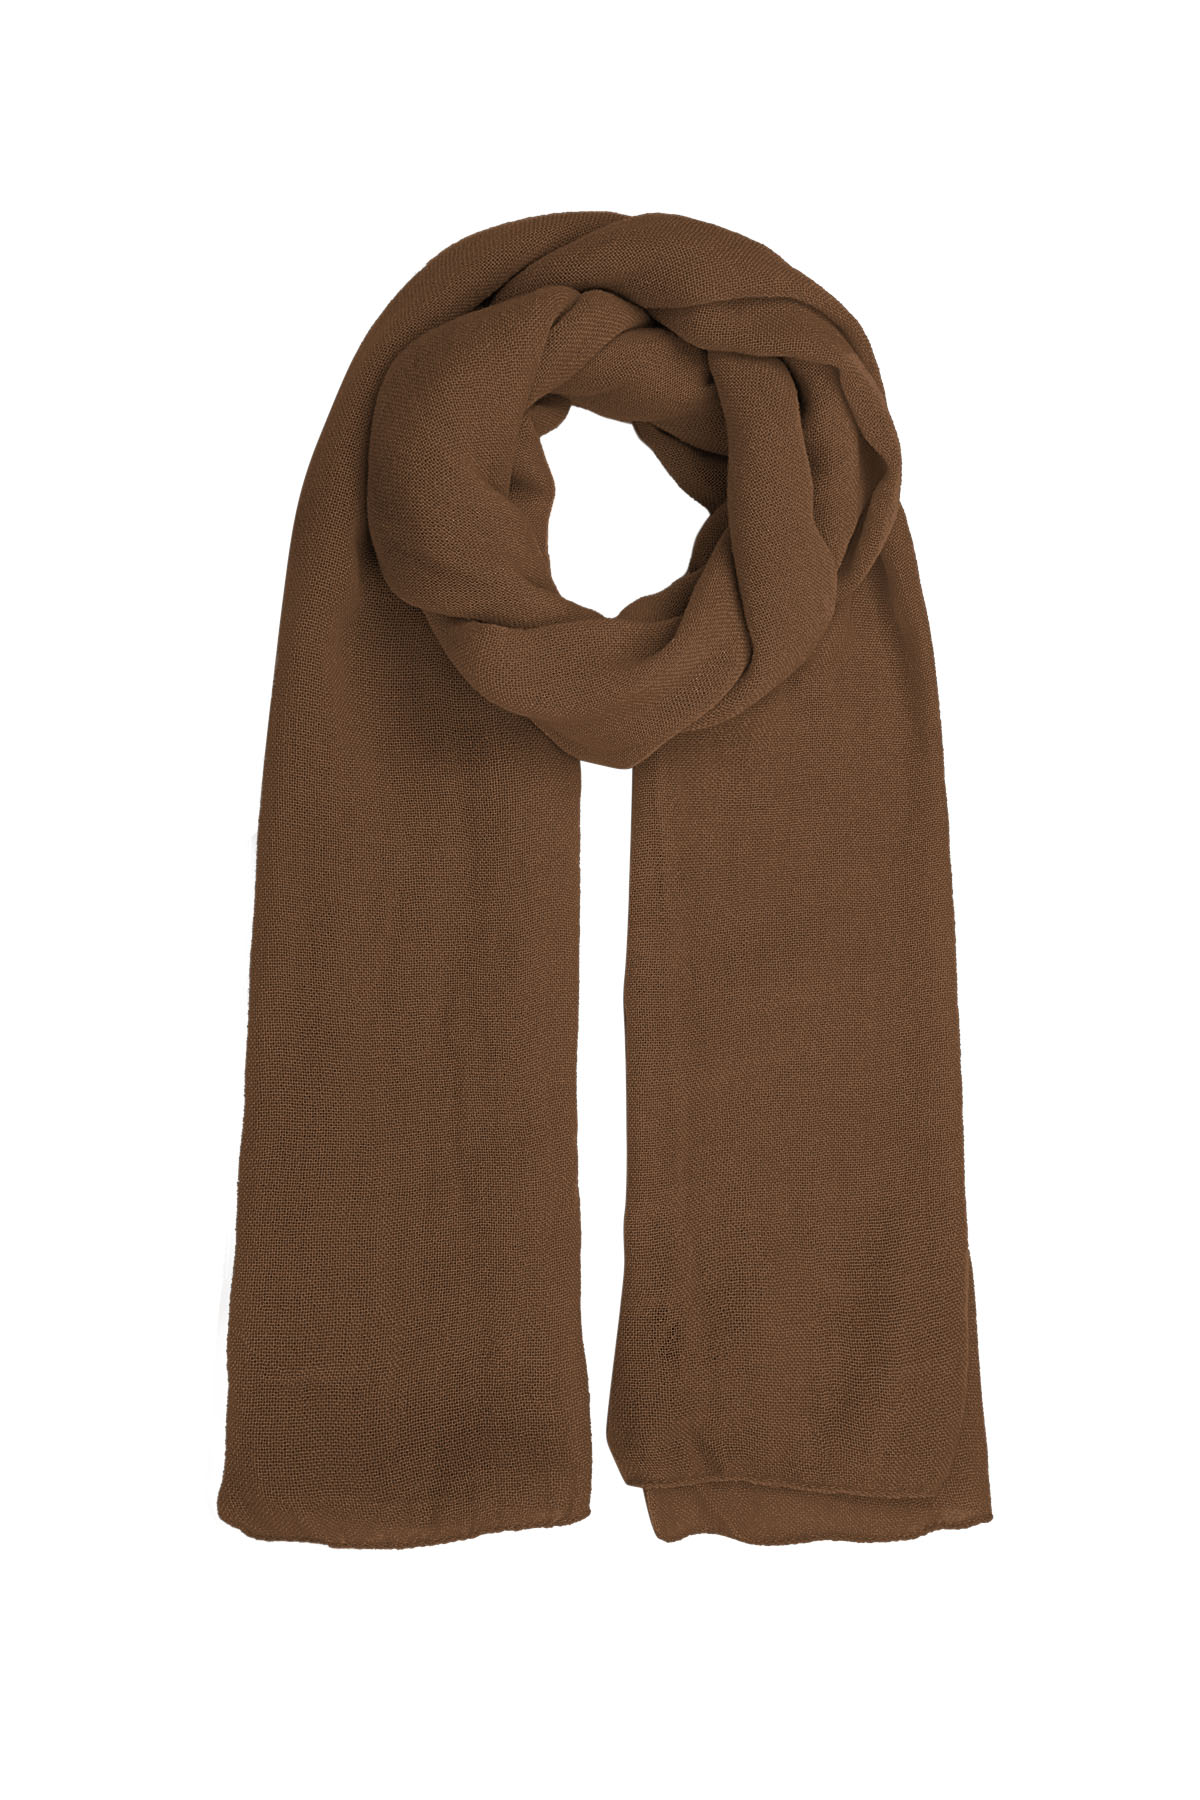 Sjaal effen kleur - bruin h5 